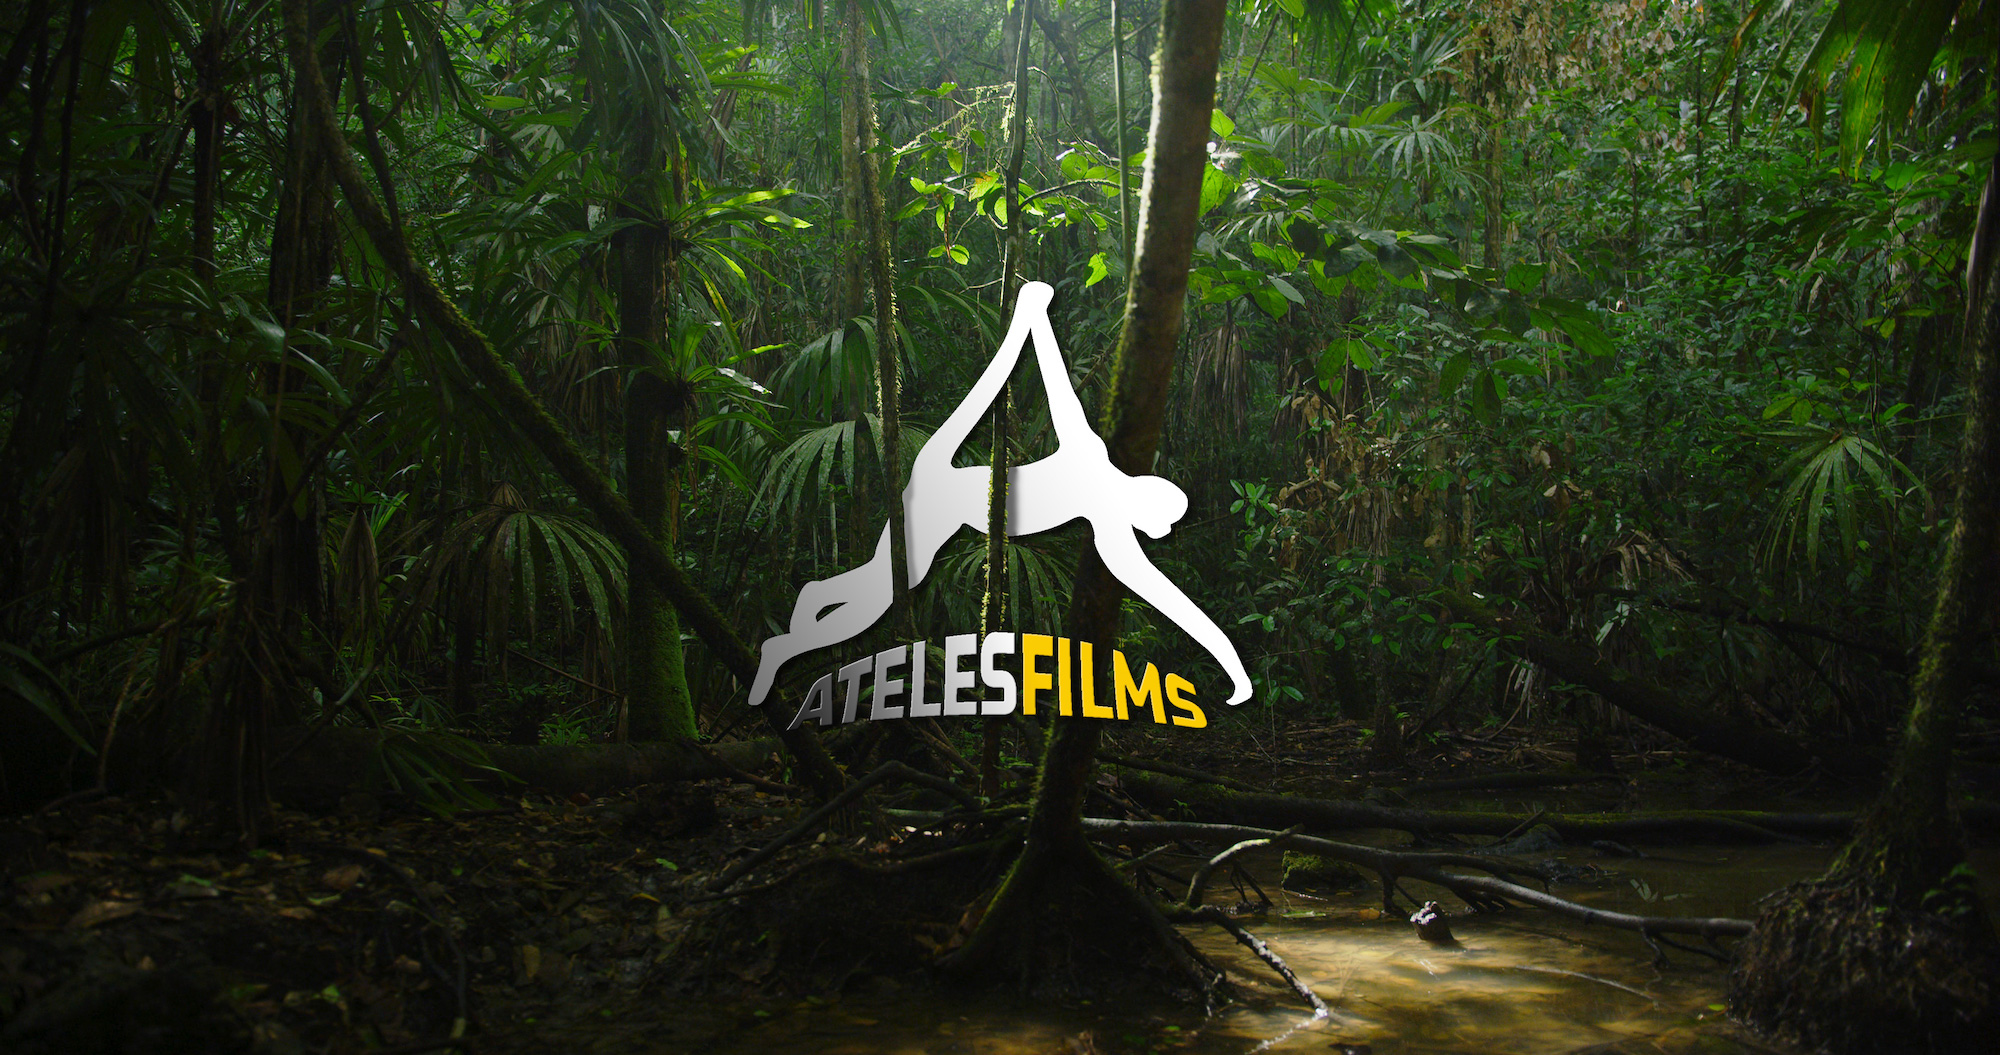 Ateles Films Logo Jungle